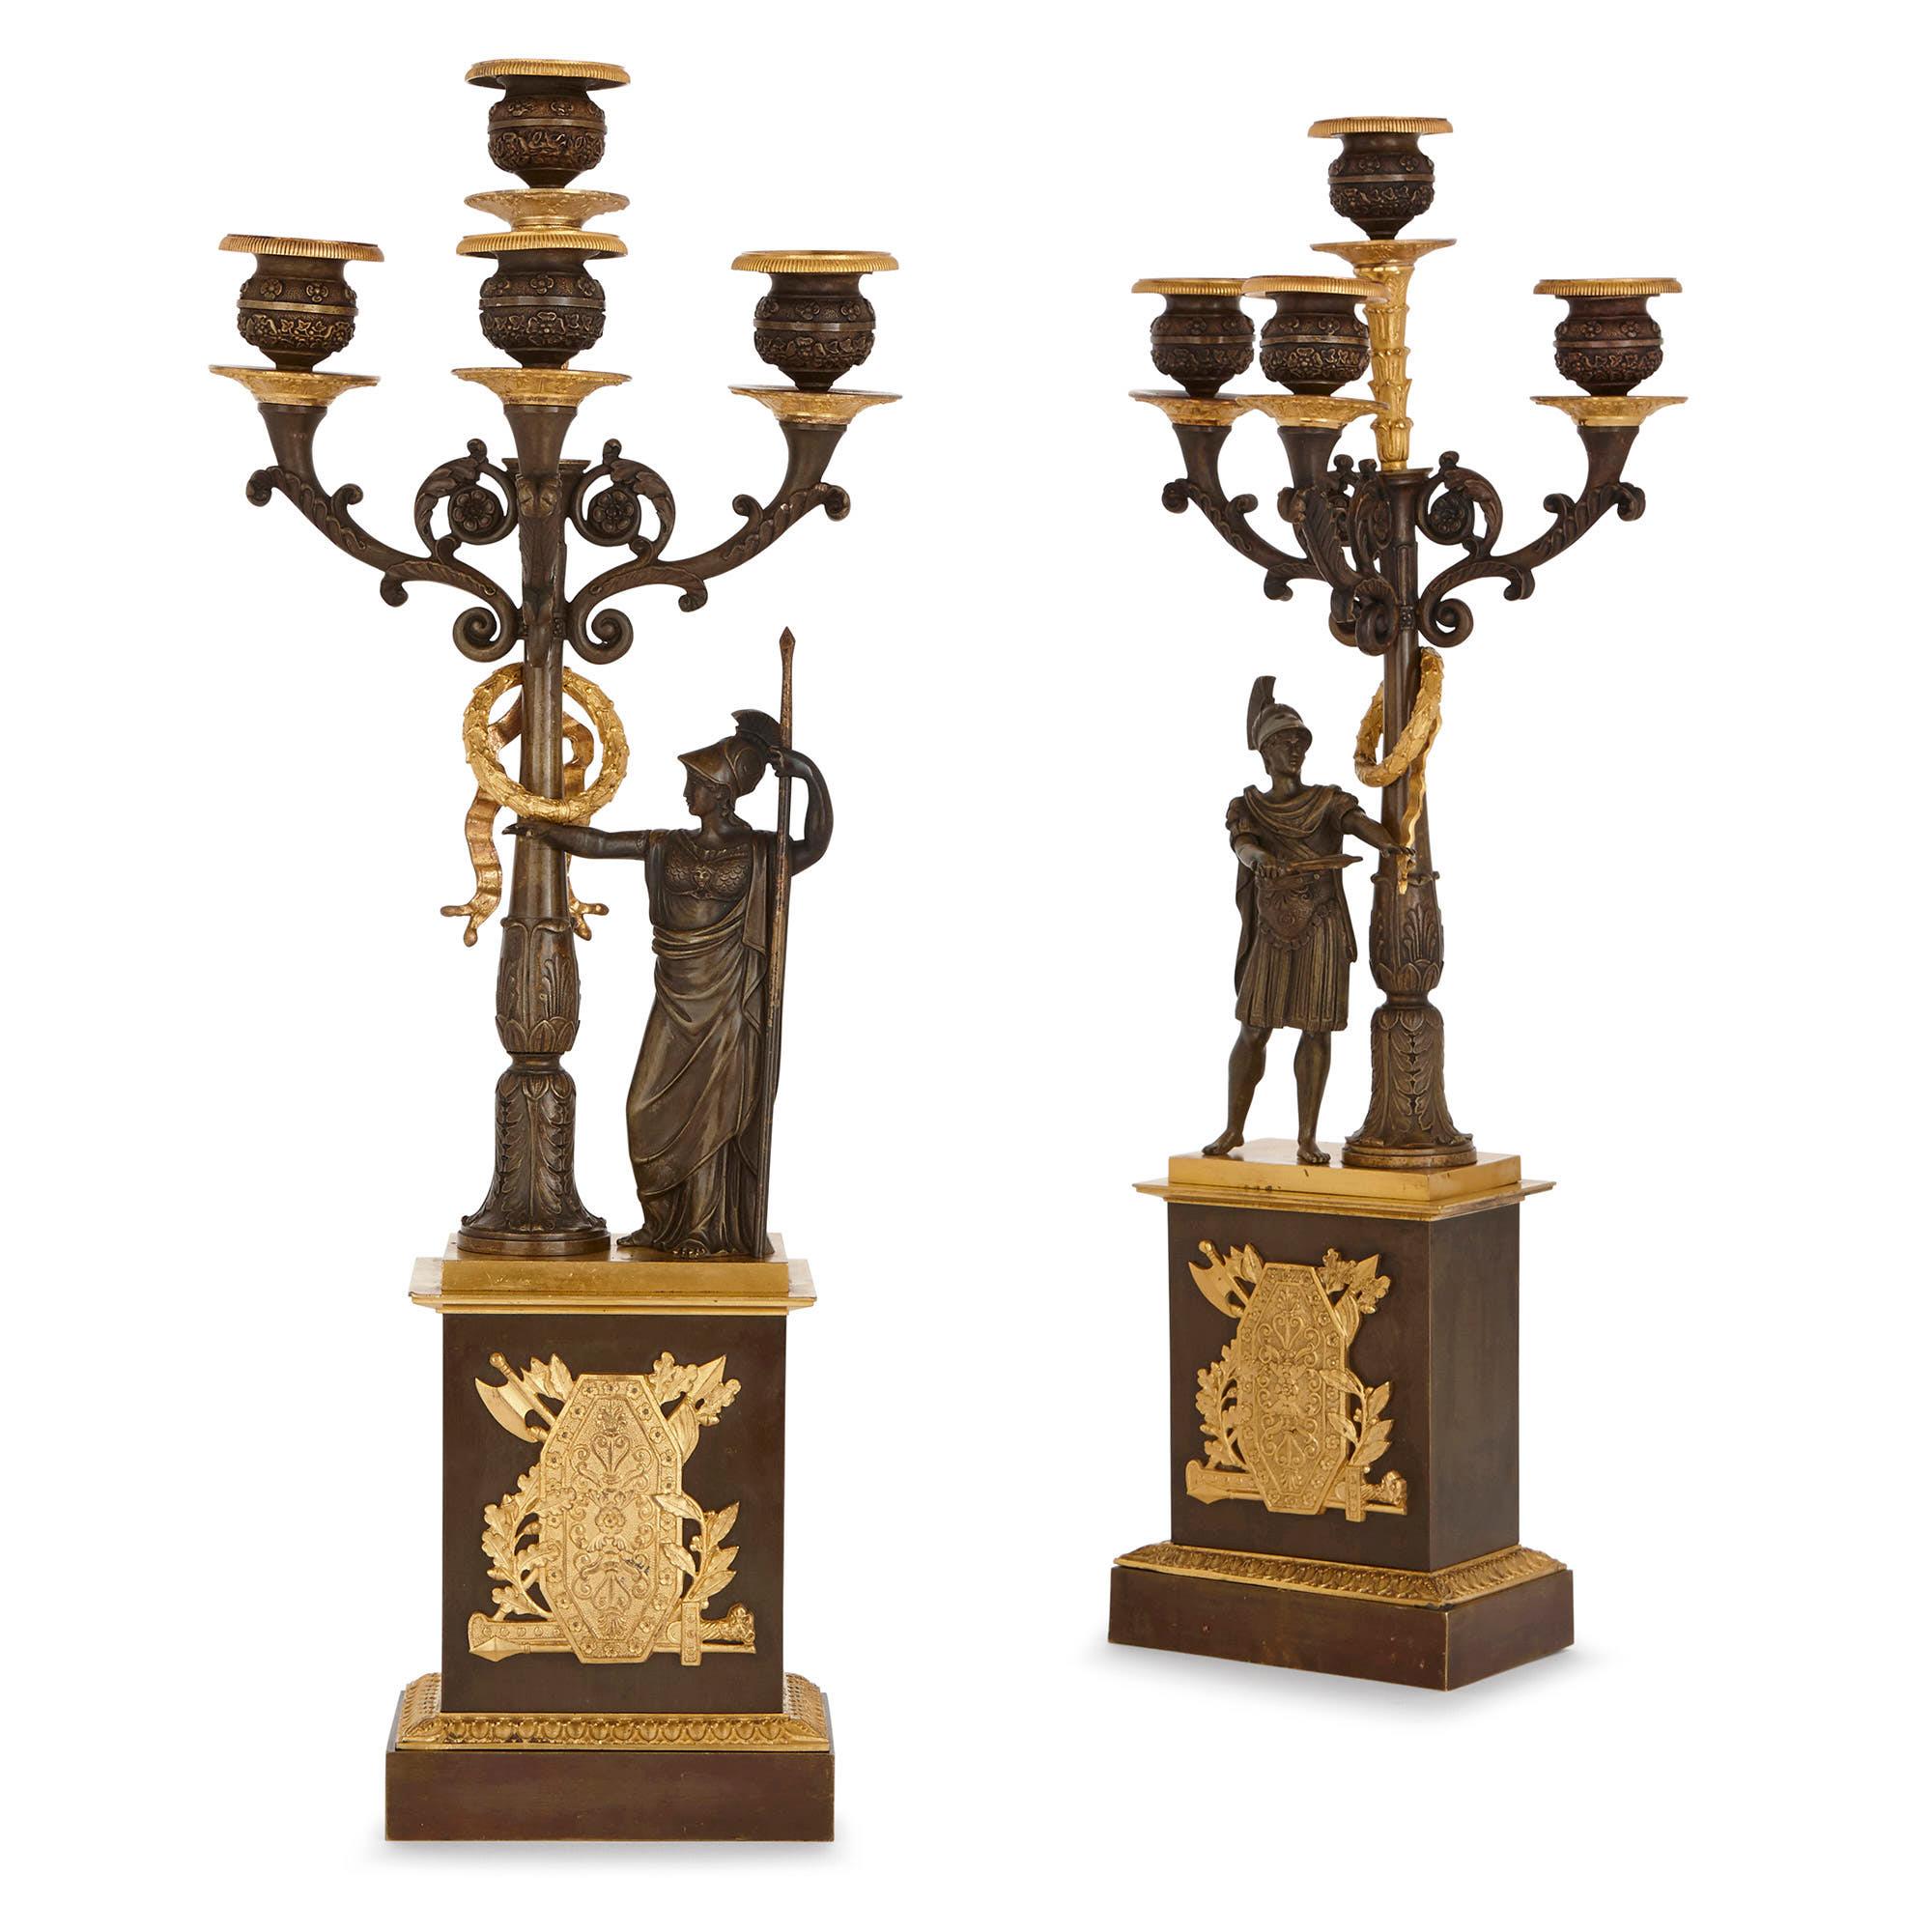 Dieses majestätische Paar vergoldeter und patinierter Bronzekandelaber ist im Empire-Stil gehalten, der unter Napoleon I. (1769-1821) populär wurde. Die Kunst der Empire-Periode (1804-1814, 1815), als Napoleon an der Macht war, konzentrierte sich